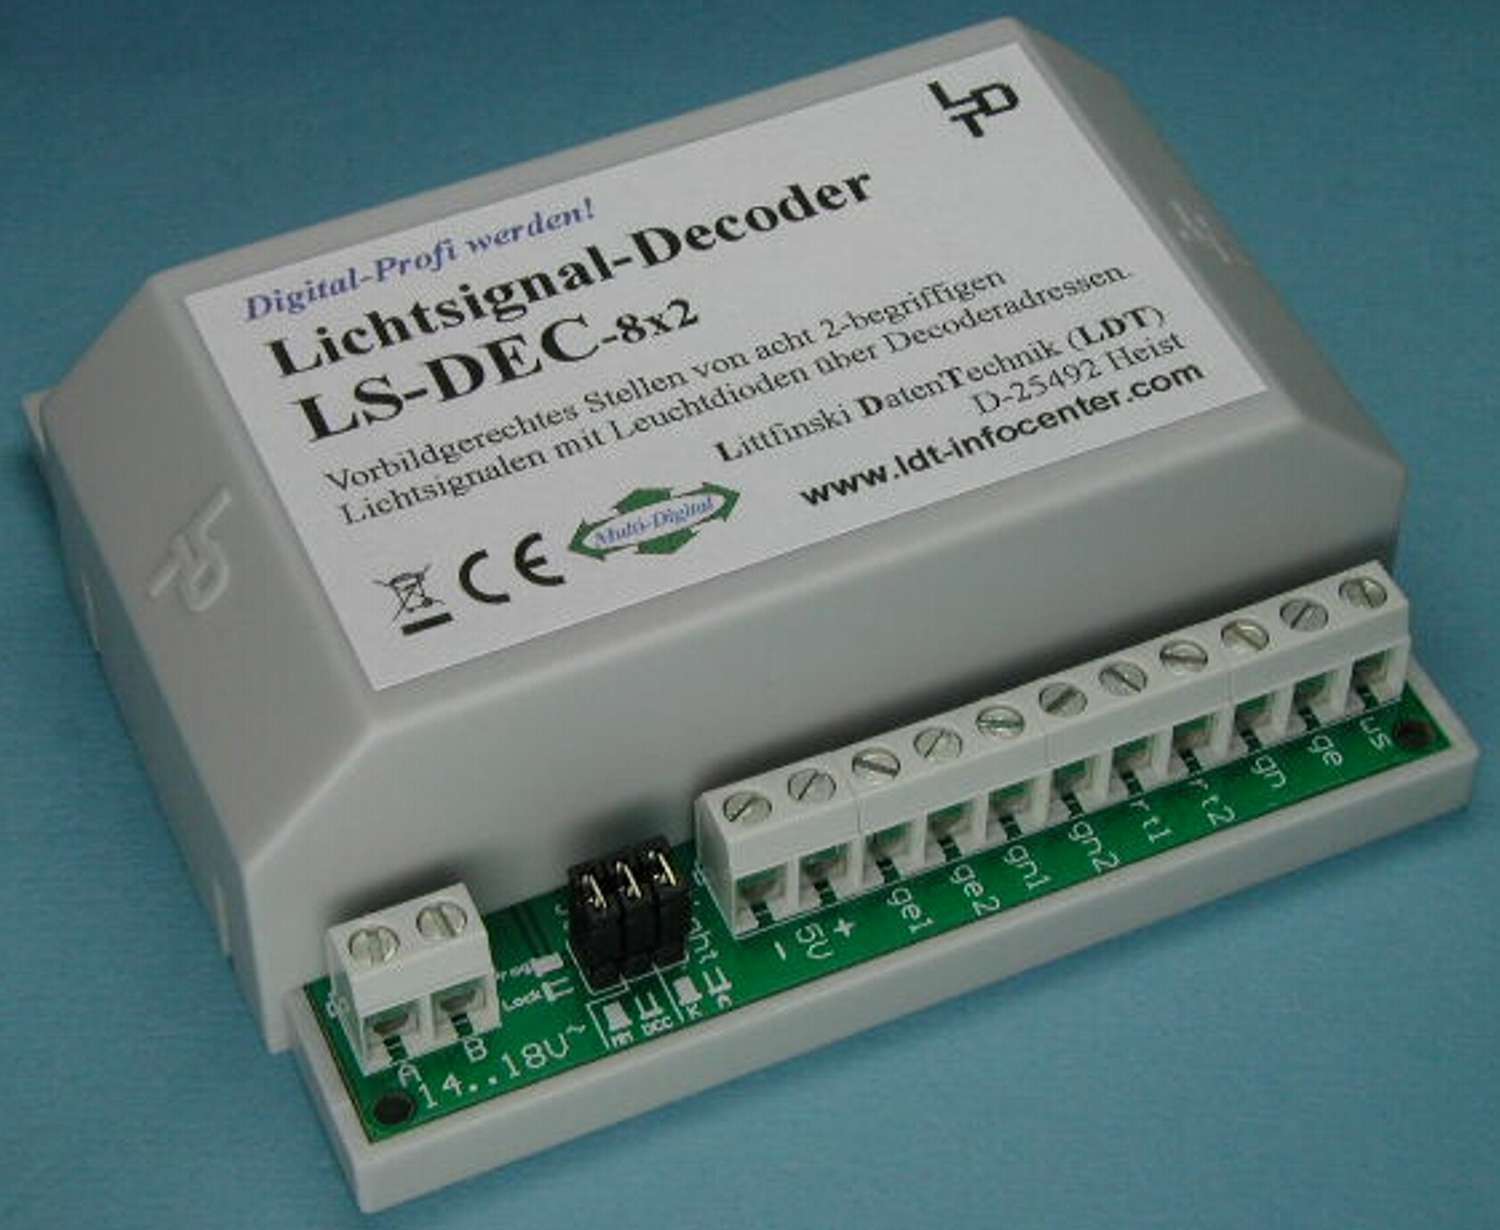 Littfinski 510713 - LS-DEC-8x2-G - Lichtsignaldecoder, 8-fach, für LED-Signale, Fertigmodul im Gehäuse